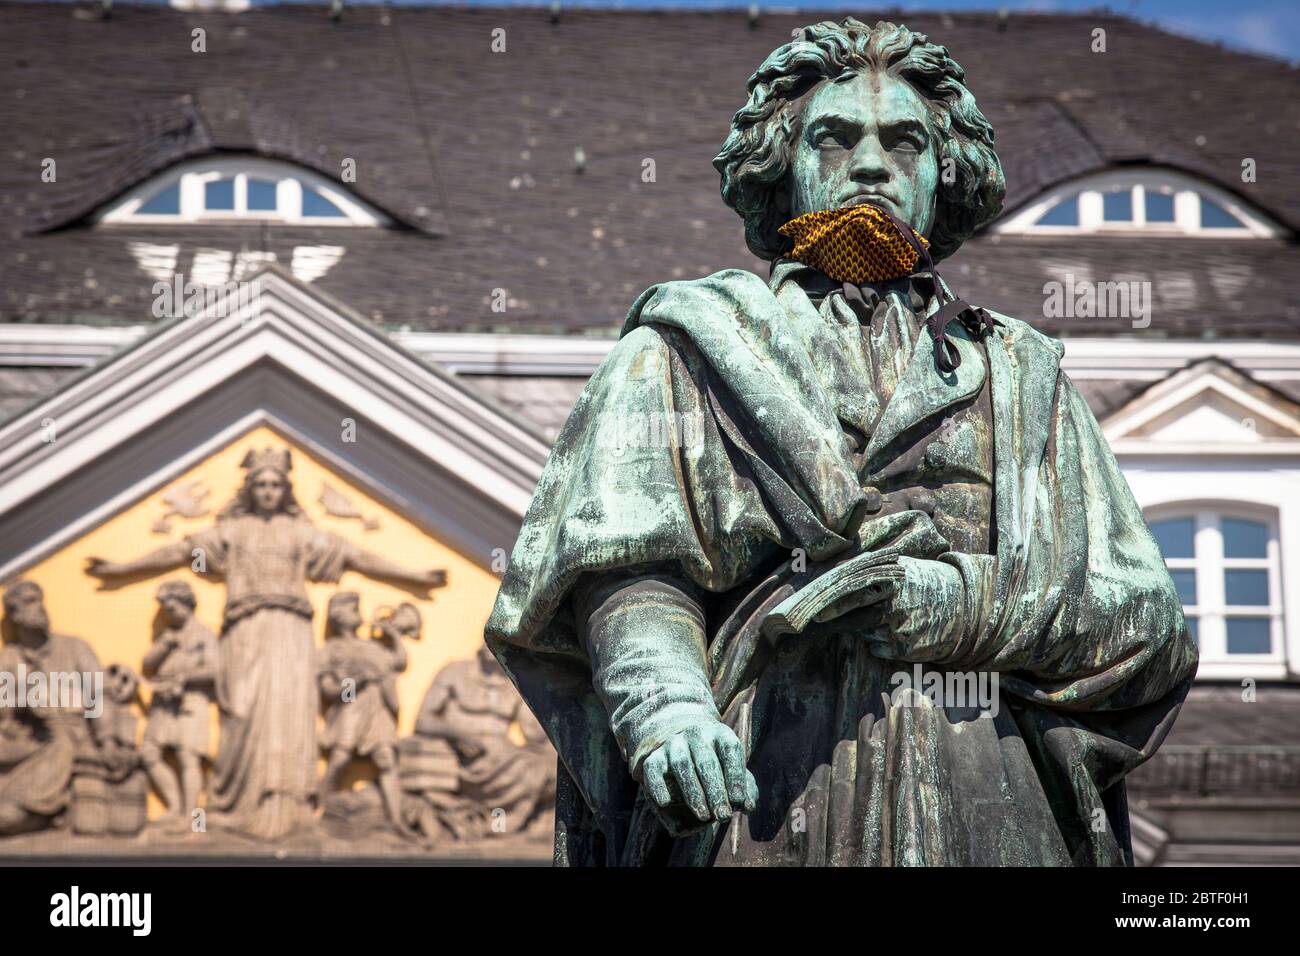 El monumento Beethoven con máscara de corona resbalada en la plaza Muenster frente a la antigua oficina de correos, Bonn, Renania del Norte-Westfalia, Alemania. Das be Foto de stock